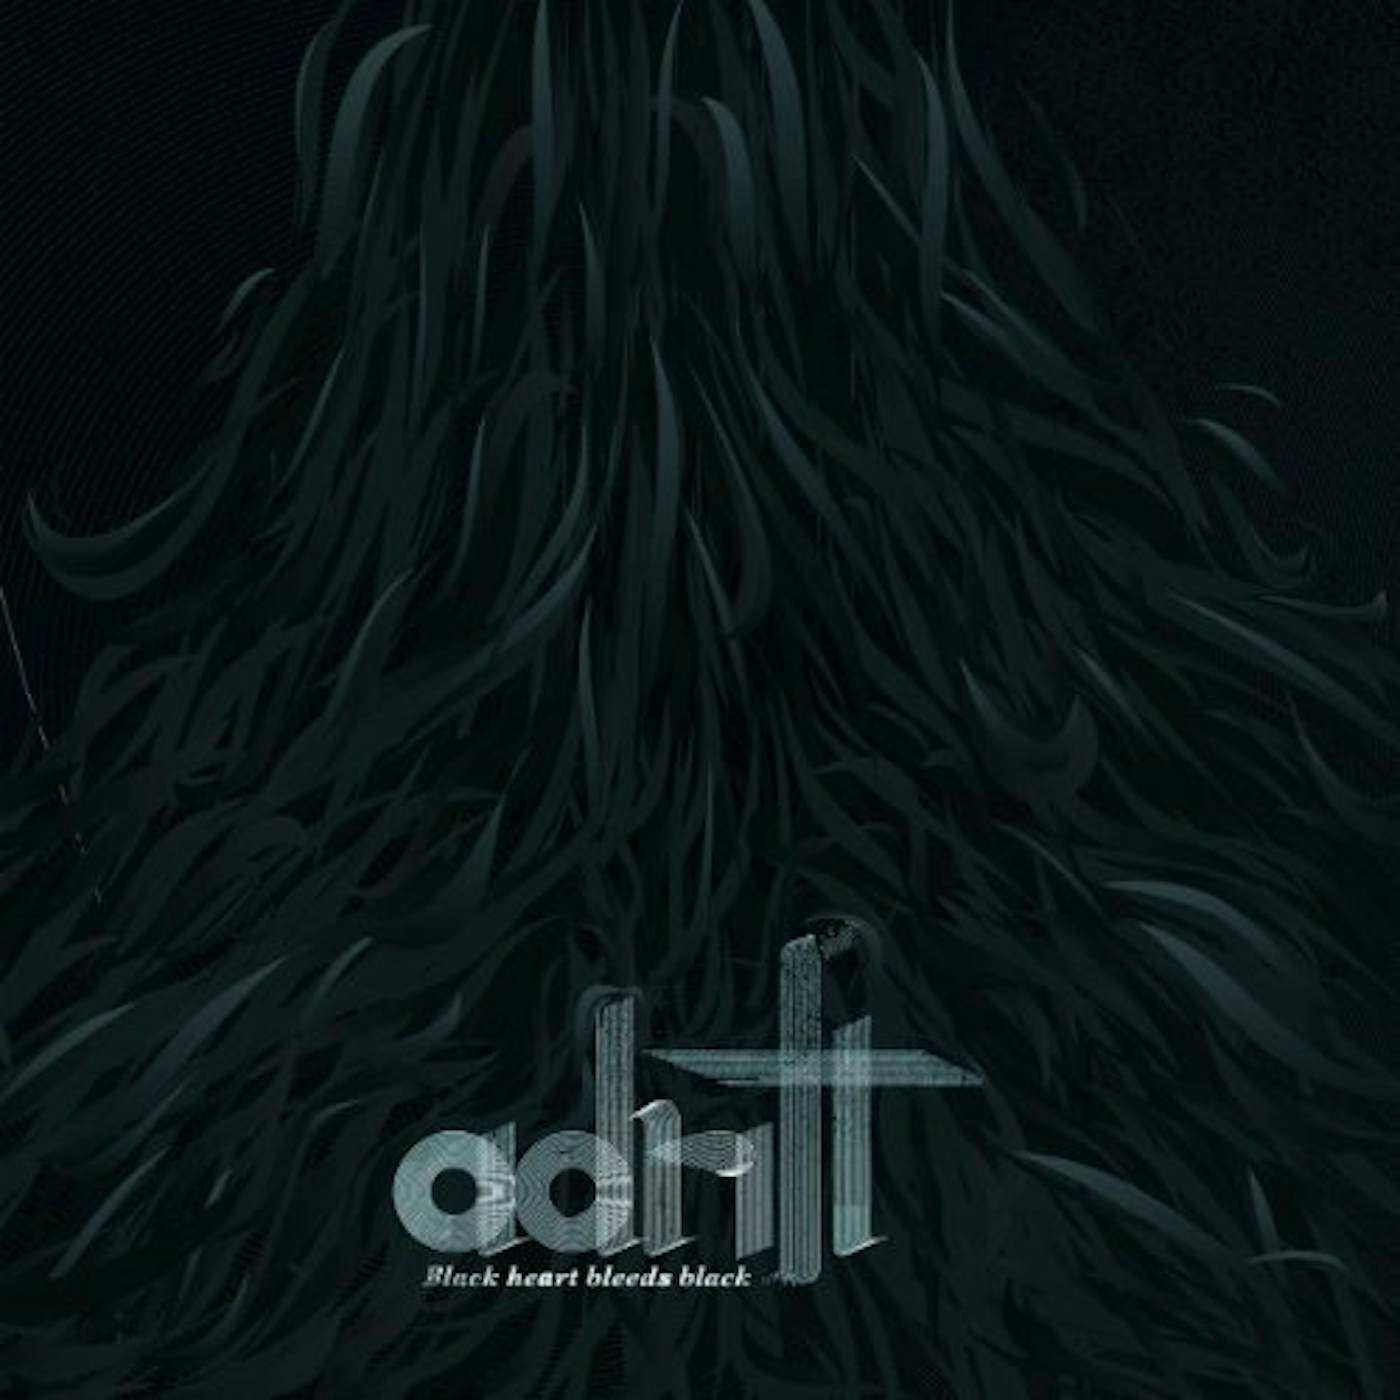 Adrift Black Heart Bleeds Black Vinyl Record